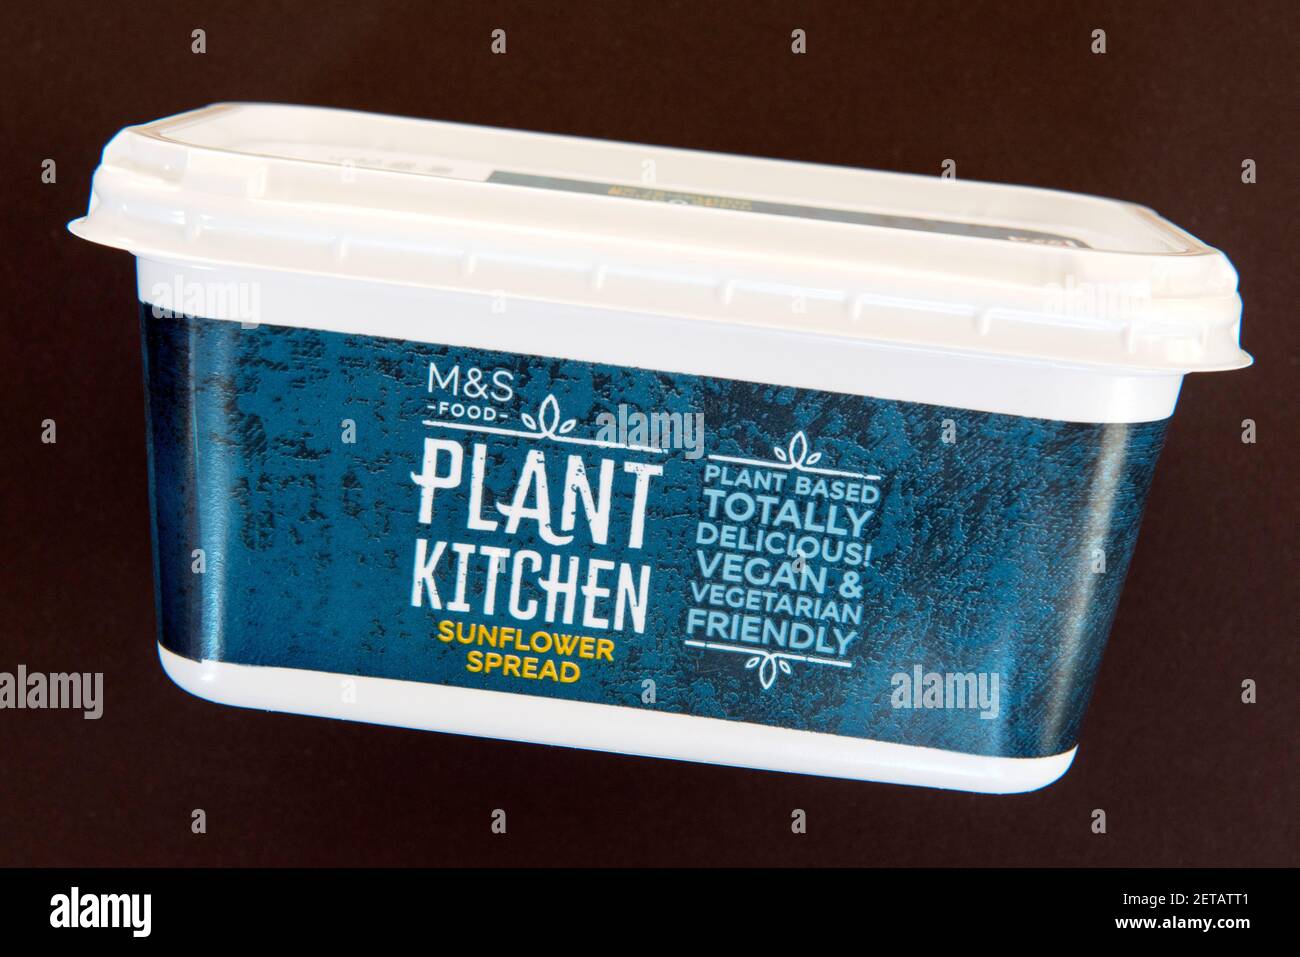 Baignoire de M&S Food Plant Kitchen végétalien tournesol tartiné margarine sans produits laitiers isolée sur fond noir Banque D'Images